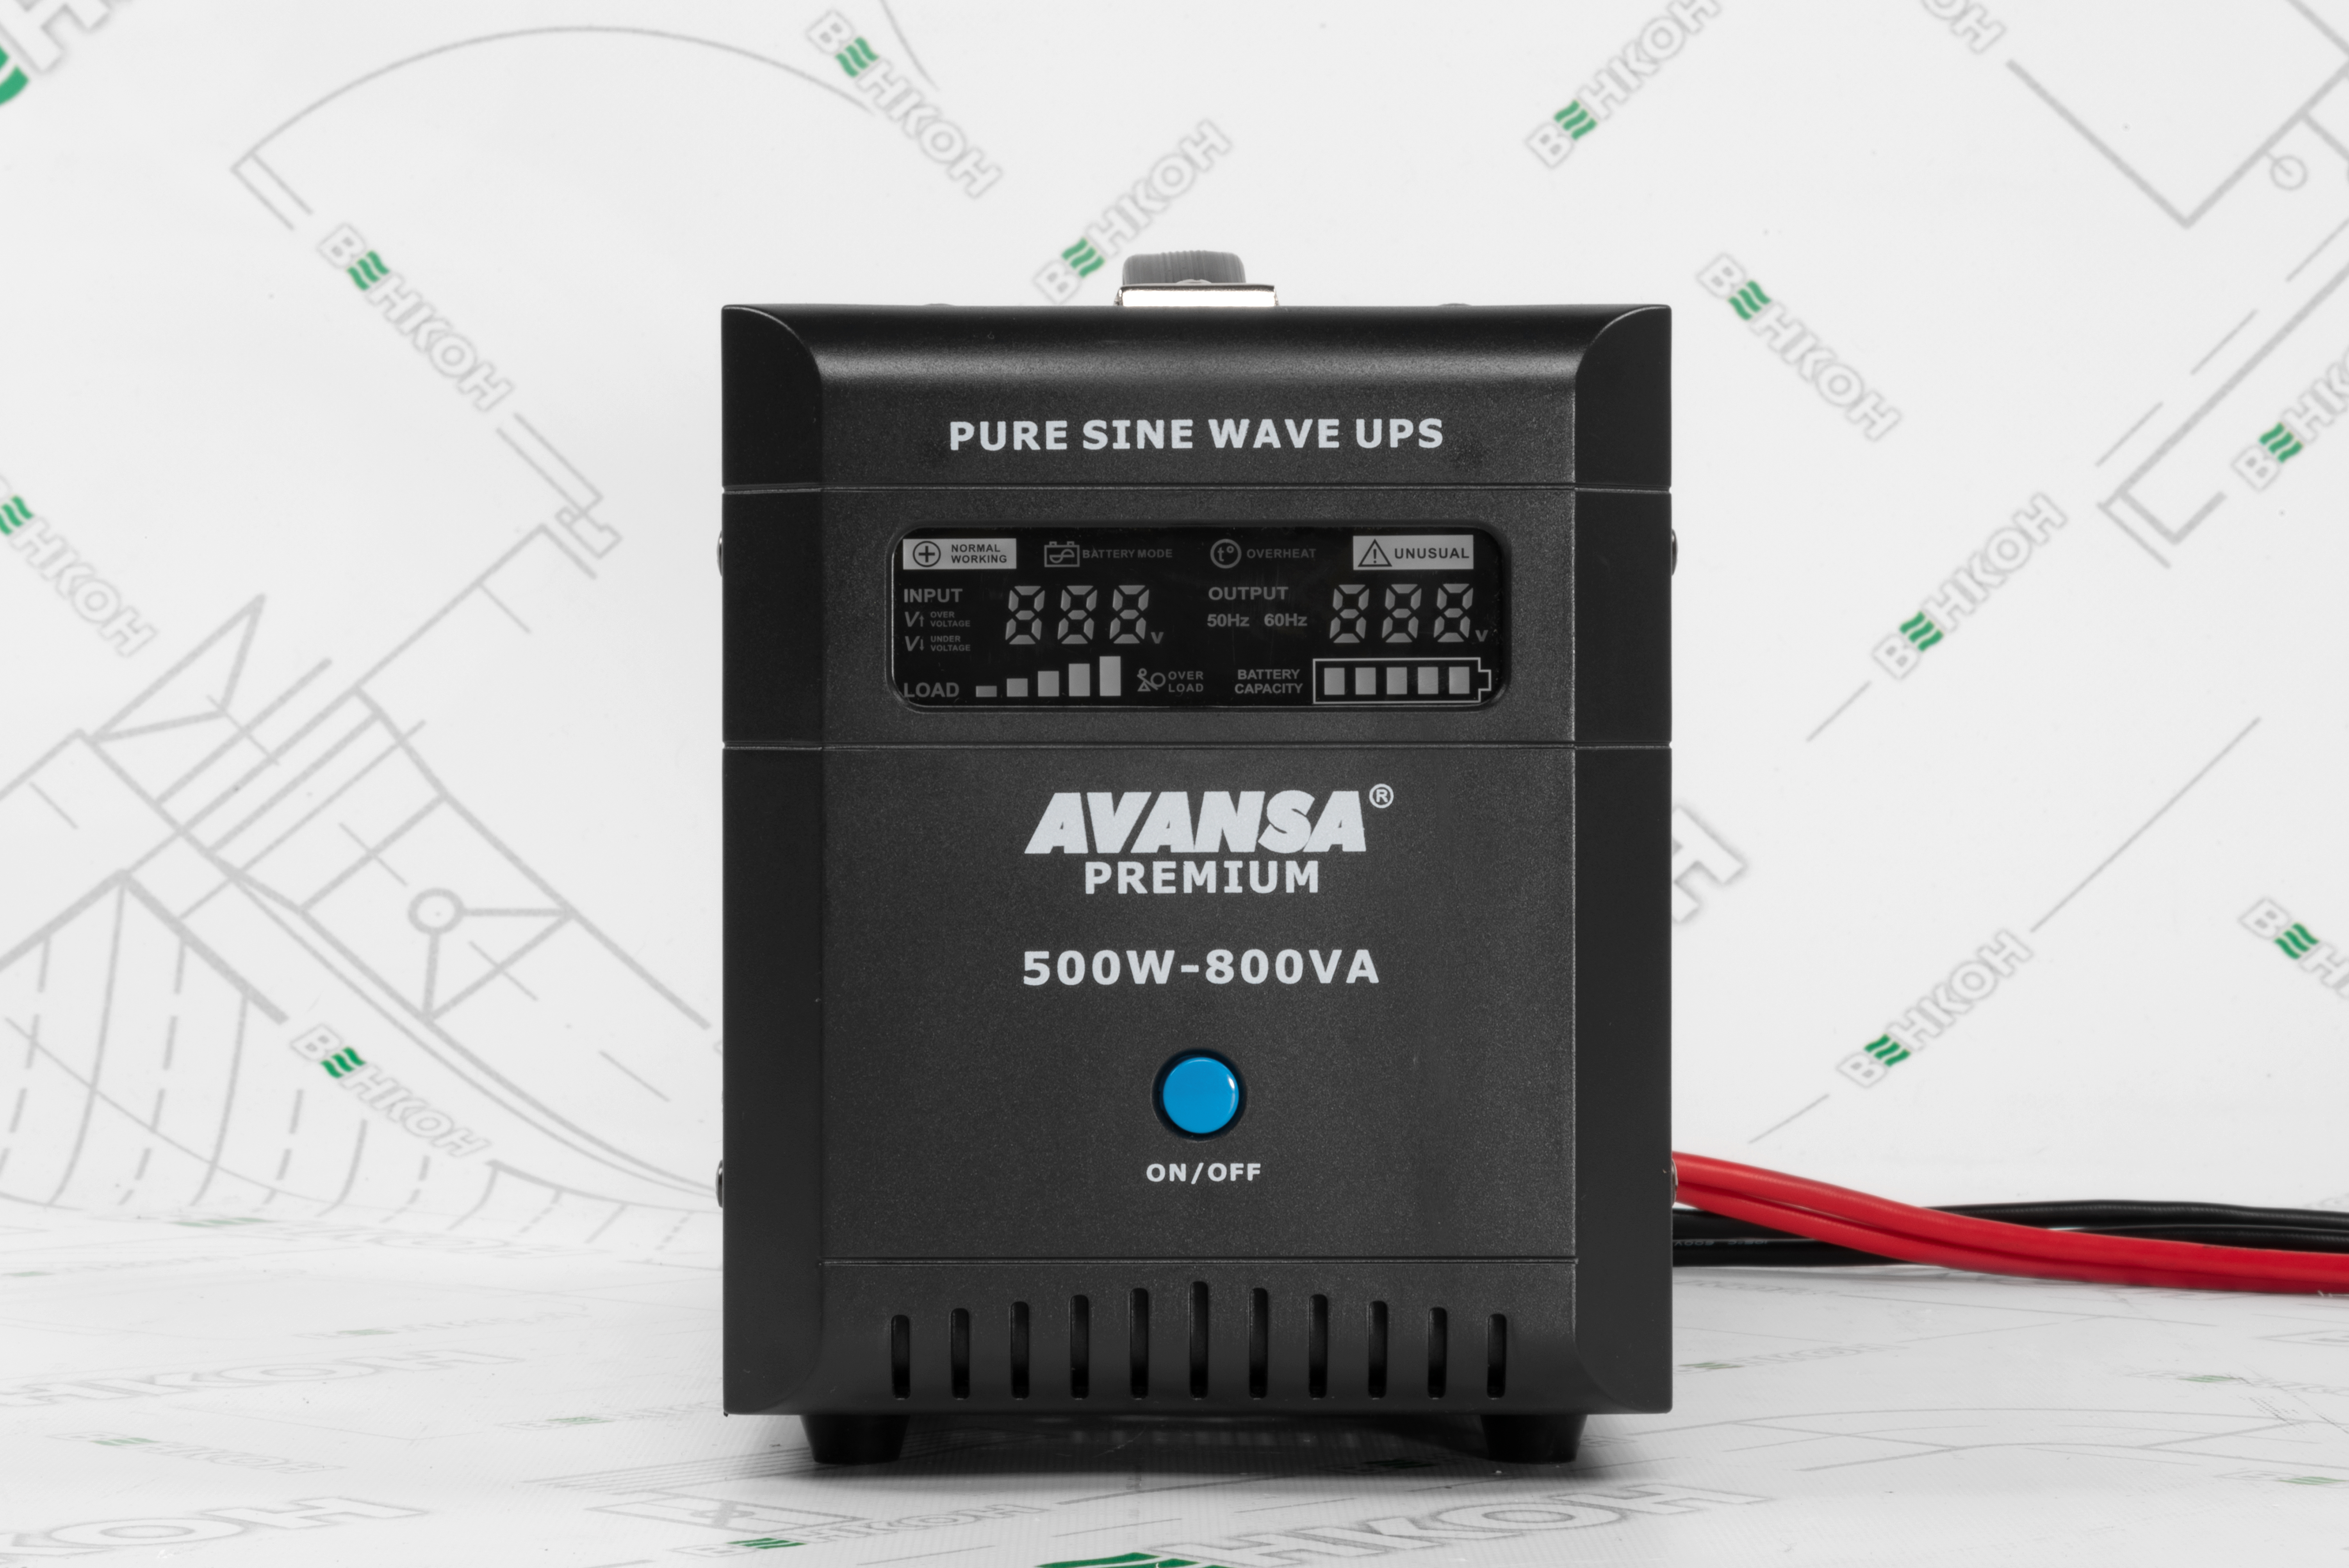 продаём Avansa Premium 500W-800VA-12VDC в Украине - фото 4